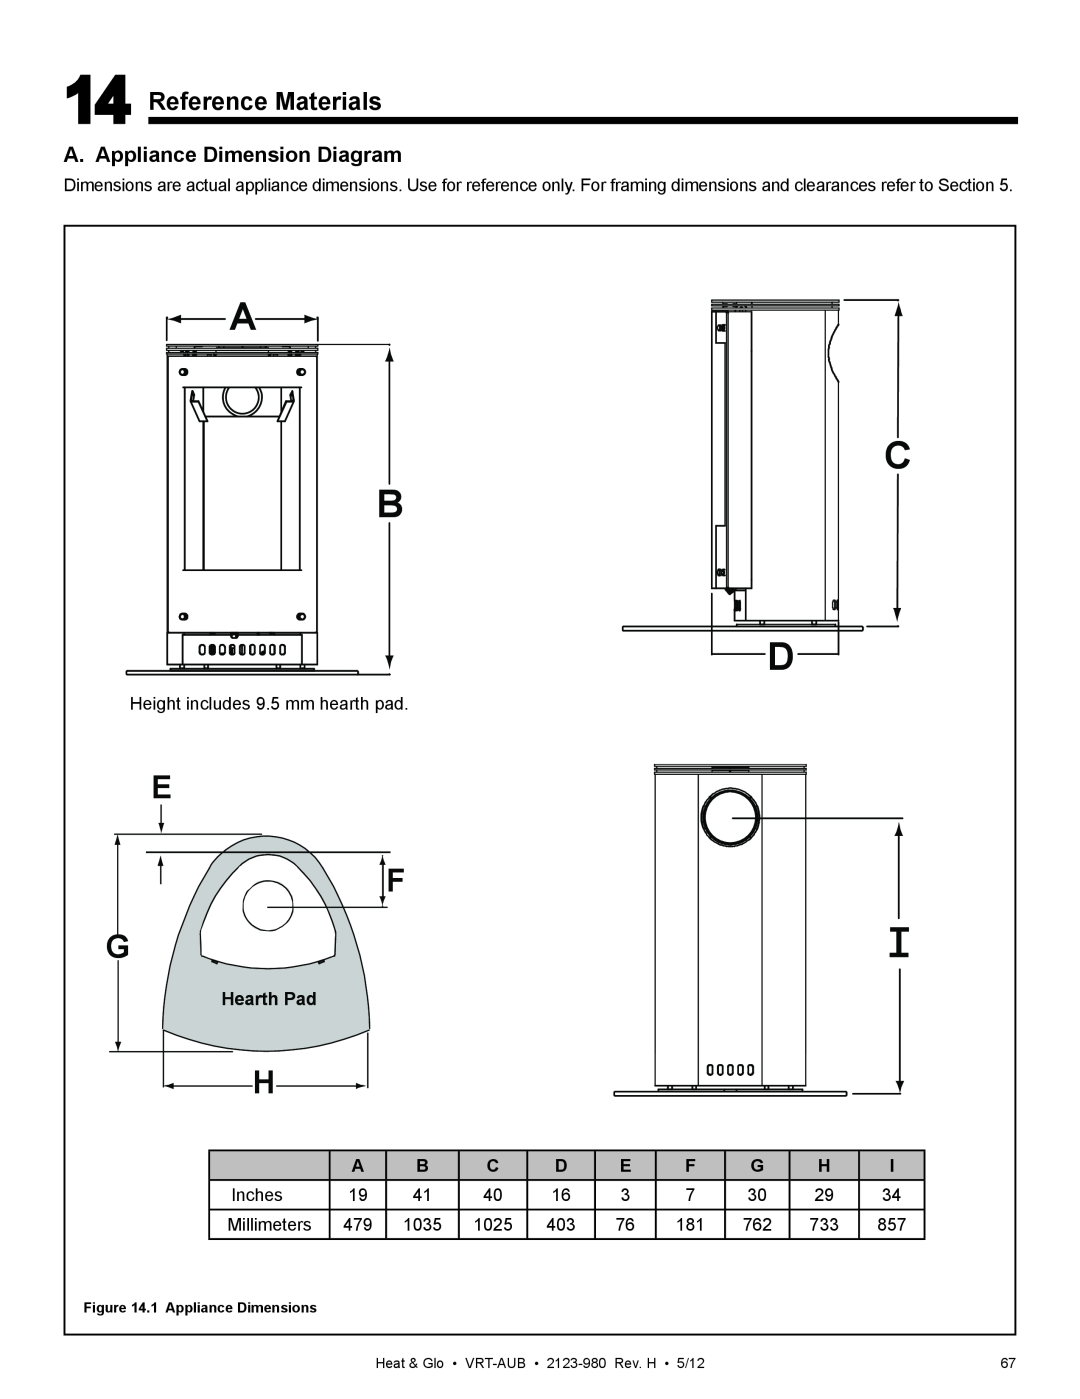 Heat & Glo LifeStyle VRT-BZ-N-AUB, VRT-GY-N-AUB E F G, Reference Materials, A. Appliance Dimension Diagram, Hearth Pad 